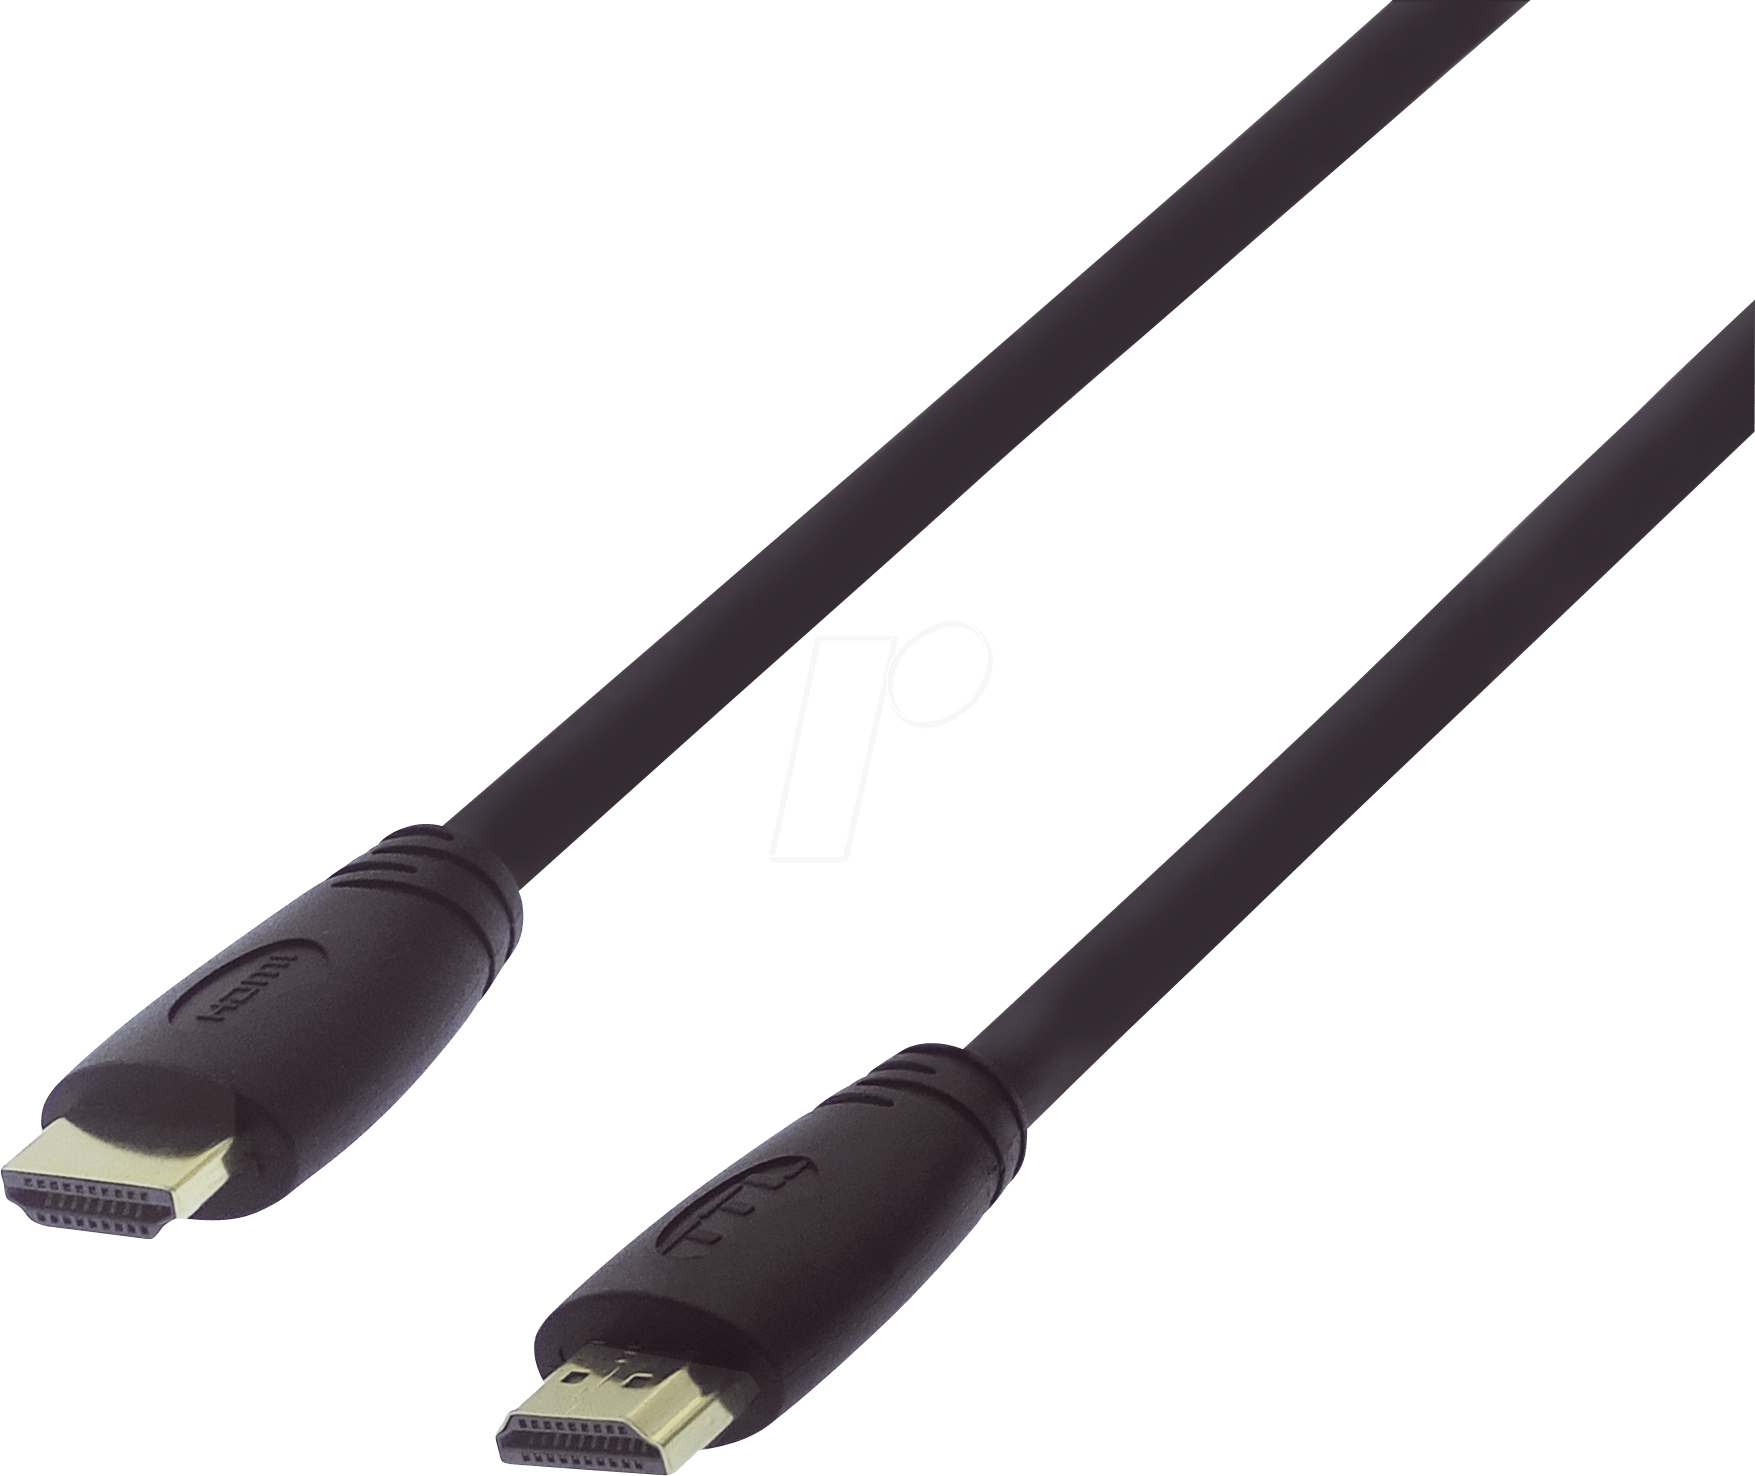 HDMI-MME-20,0UF - UltraFlex HDMI High-Speed Kabel, 20,0m von TTL NETWORK